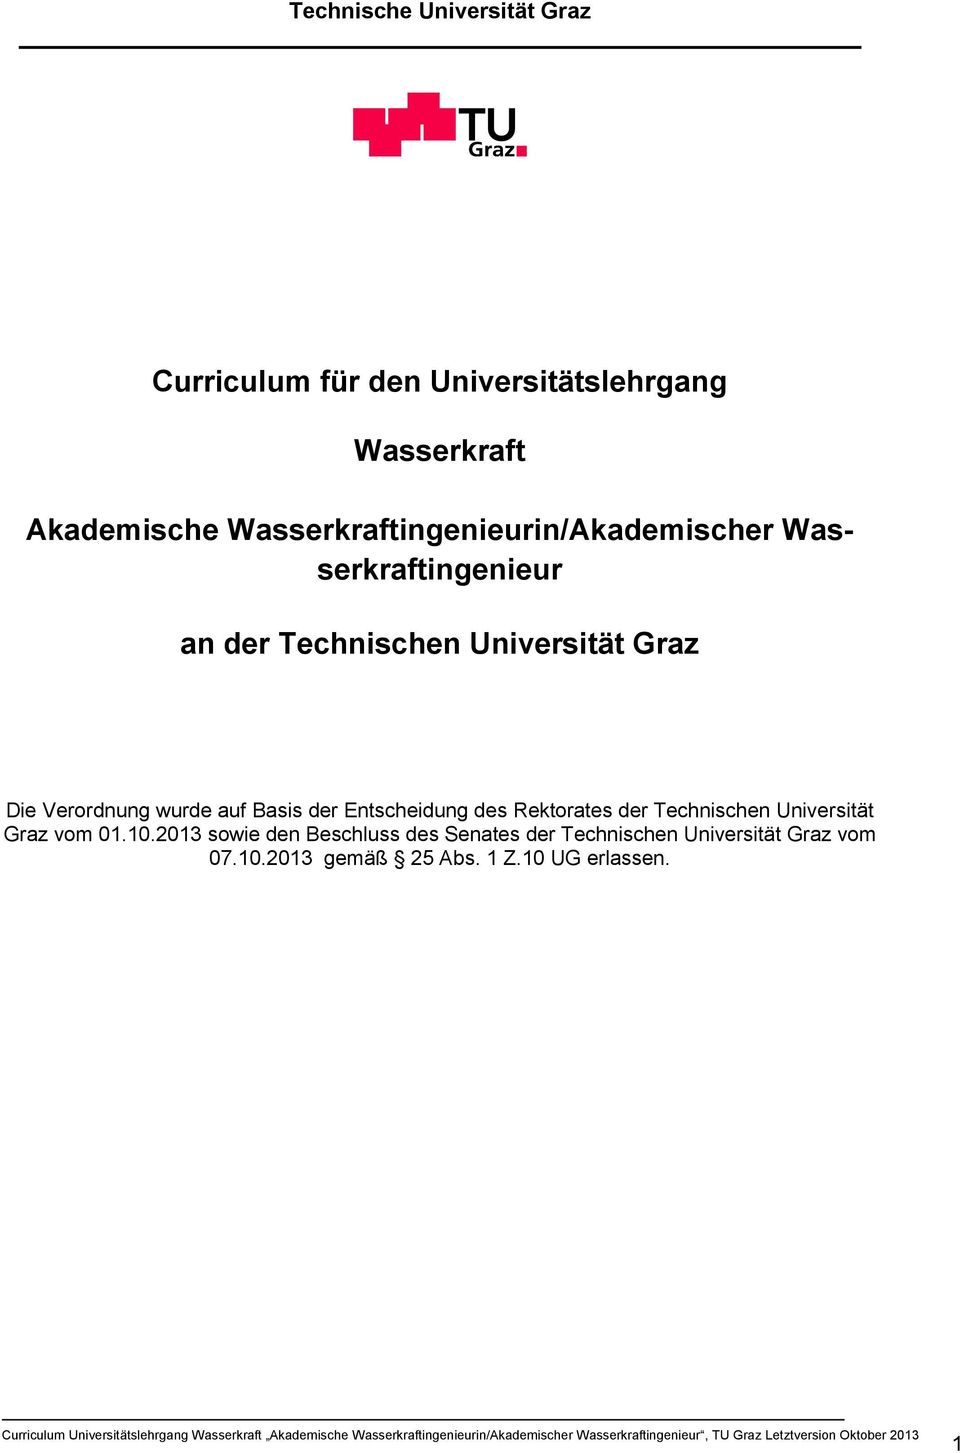 Die Verordnung wurde auf Basis der Entscheidung des Rektorates der Technischen Universität Graz